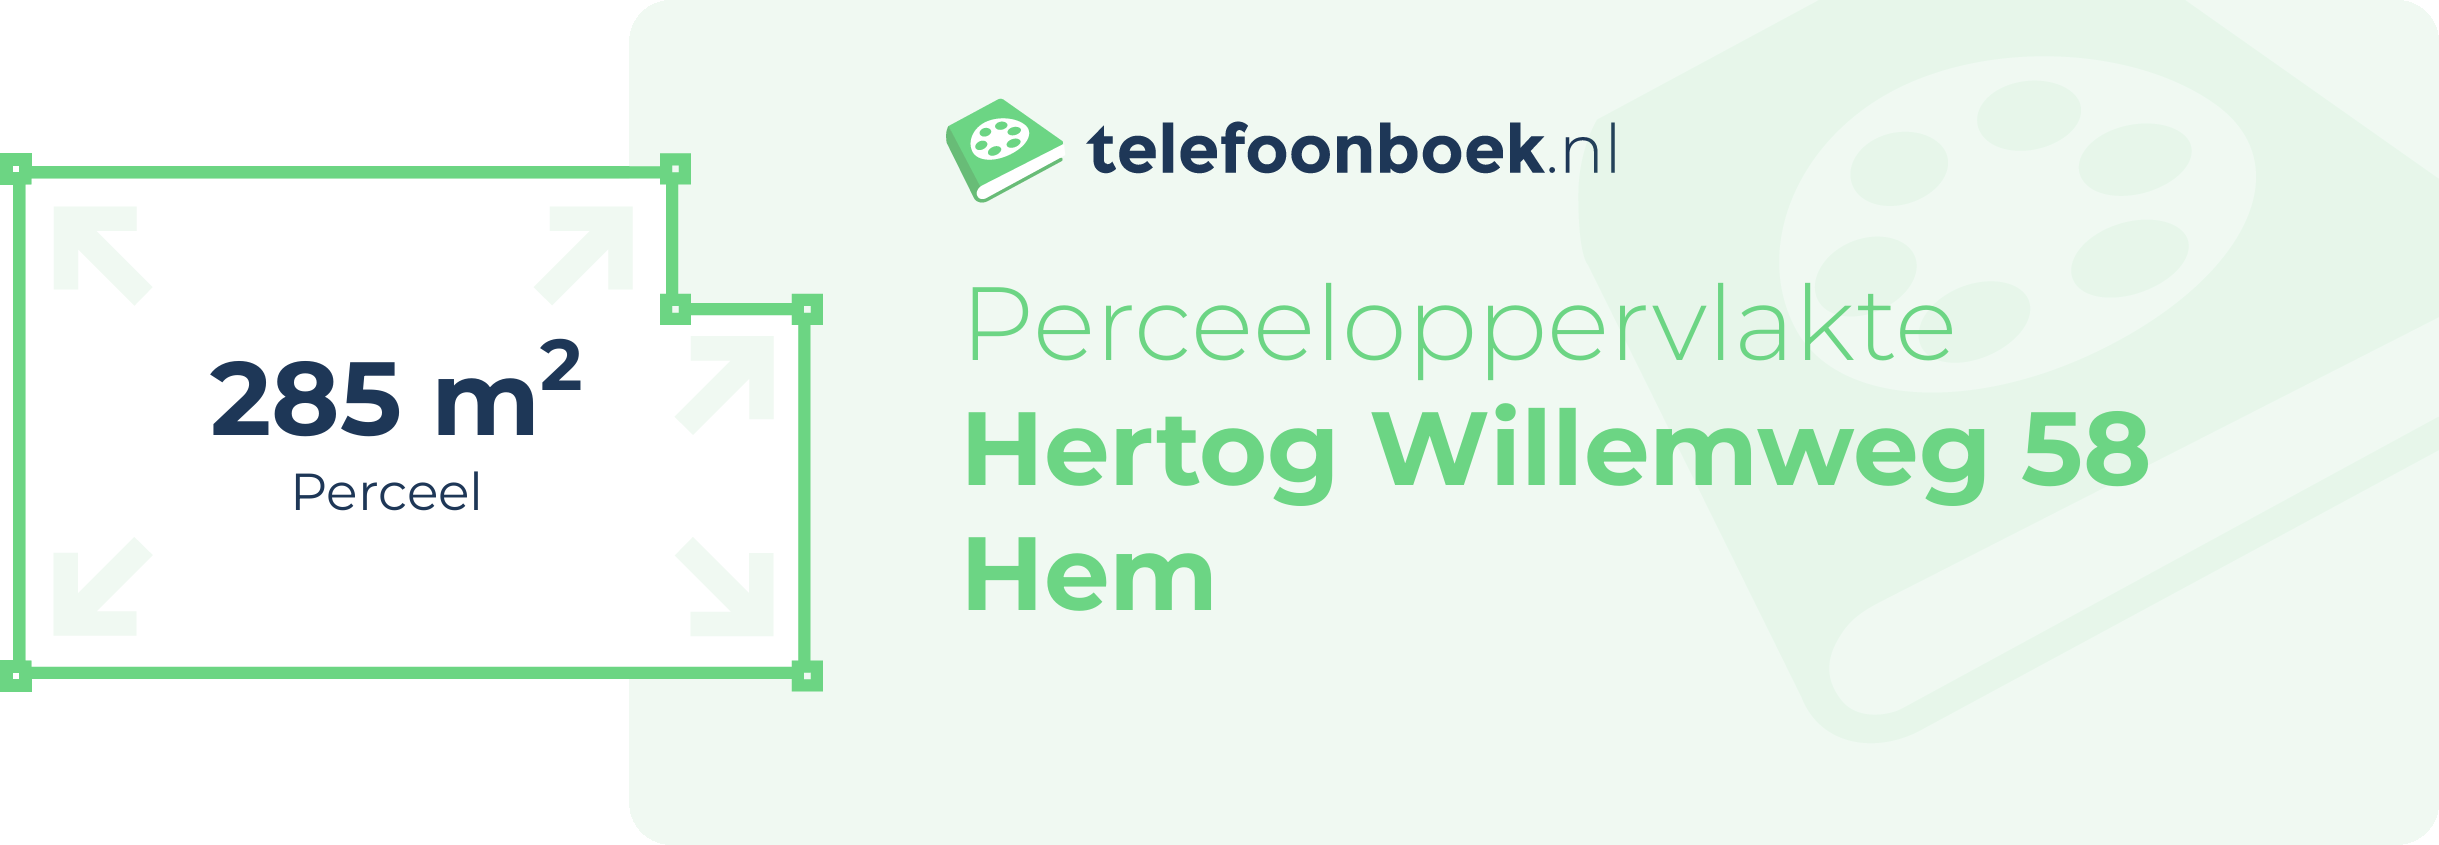 Perceeloppervlakte Hertog Willemweg 58 Hem